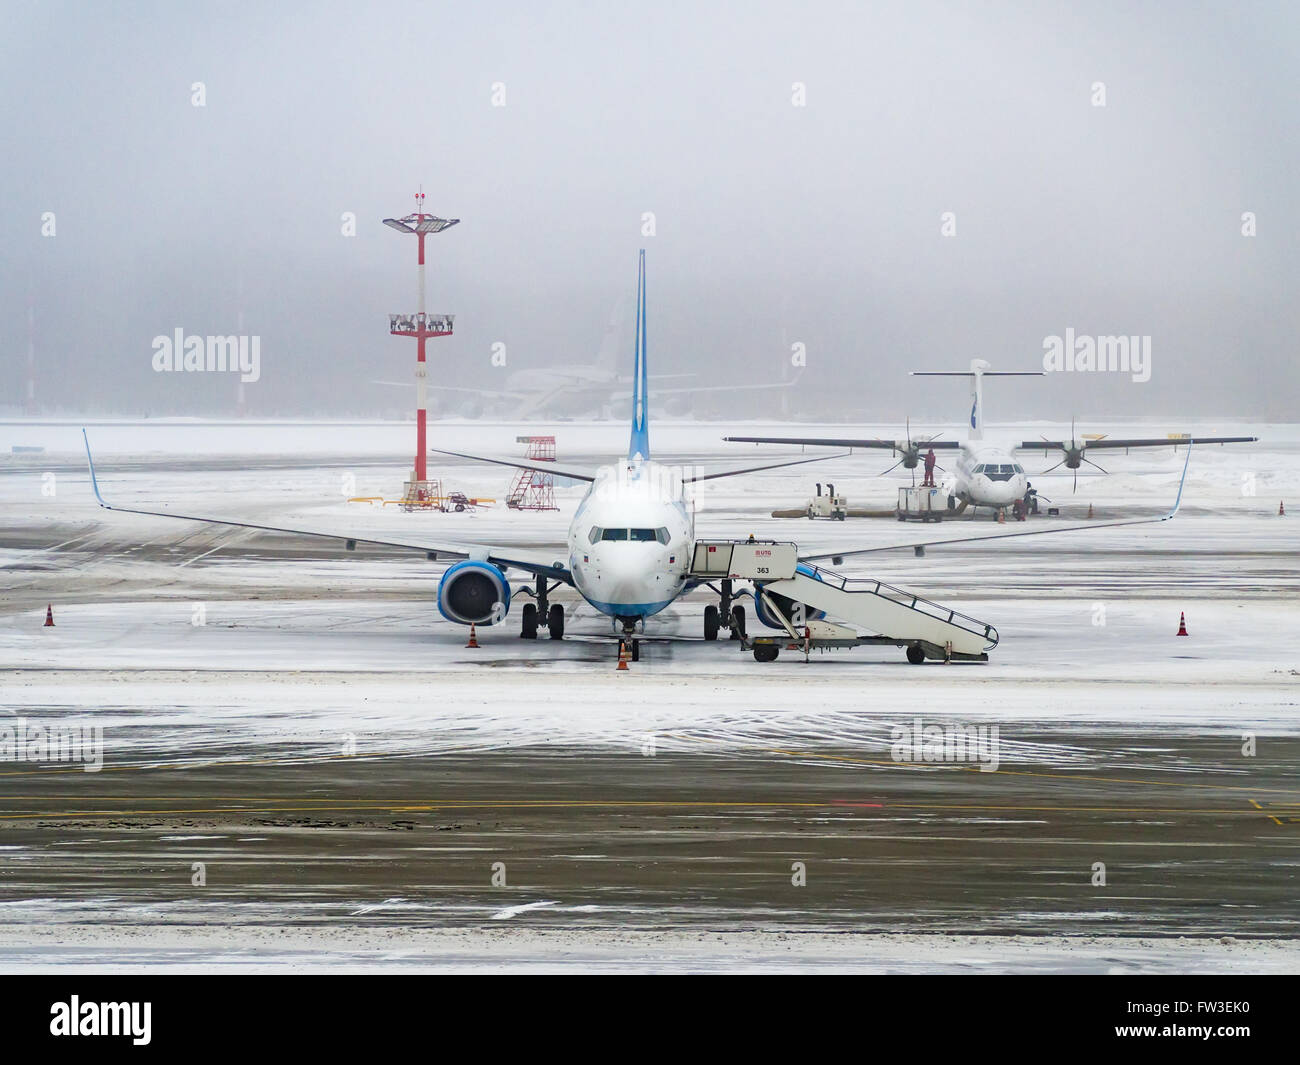 L'aéroport de vnoukovo (VKO), Moscou, Russie - le 28 janvier 2016 : les avions stationnés sur l'aérodrome Banque D'Images